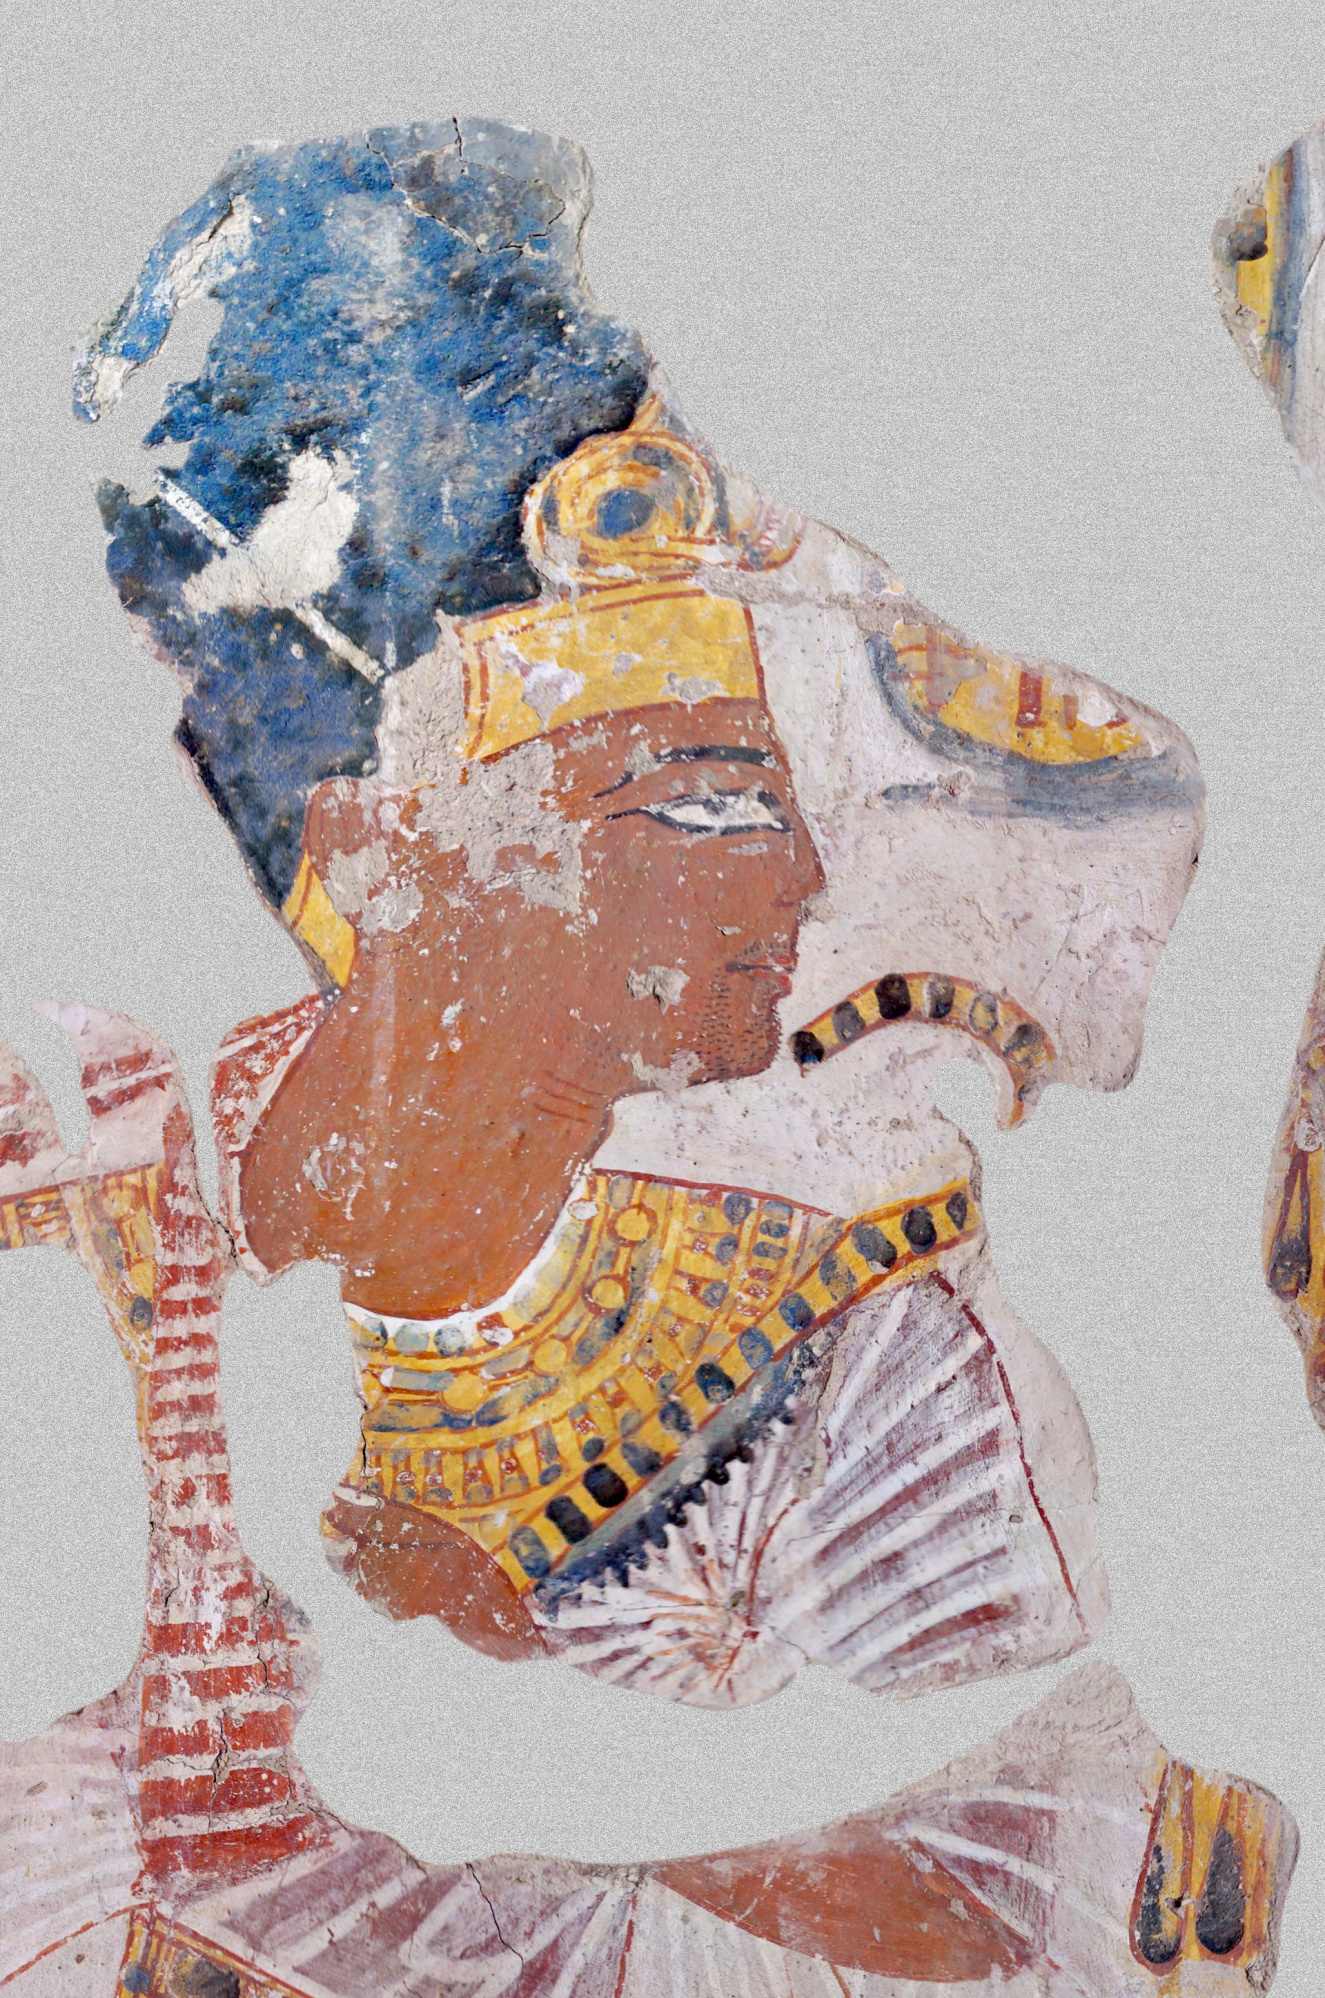 नख्तमुन मकबरे में रामसेस द्वितीय का चित्र, रामेसियम में वेदी के प्रमुख (मकबरा टीटी 341, संभवतः 20वां राजवंश, लगभग 1100 ईसा पूर्व)।